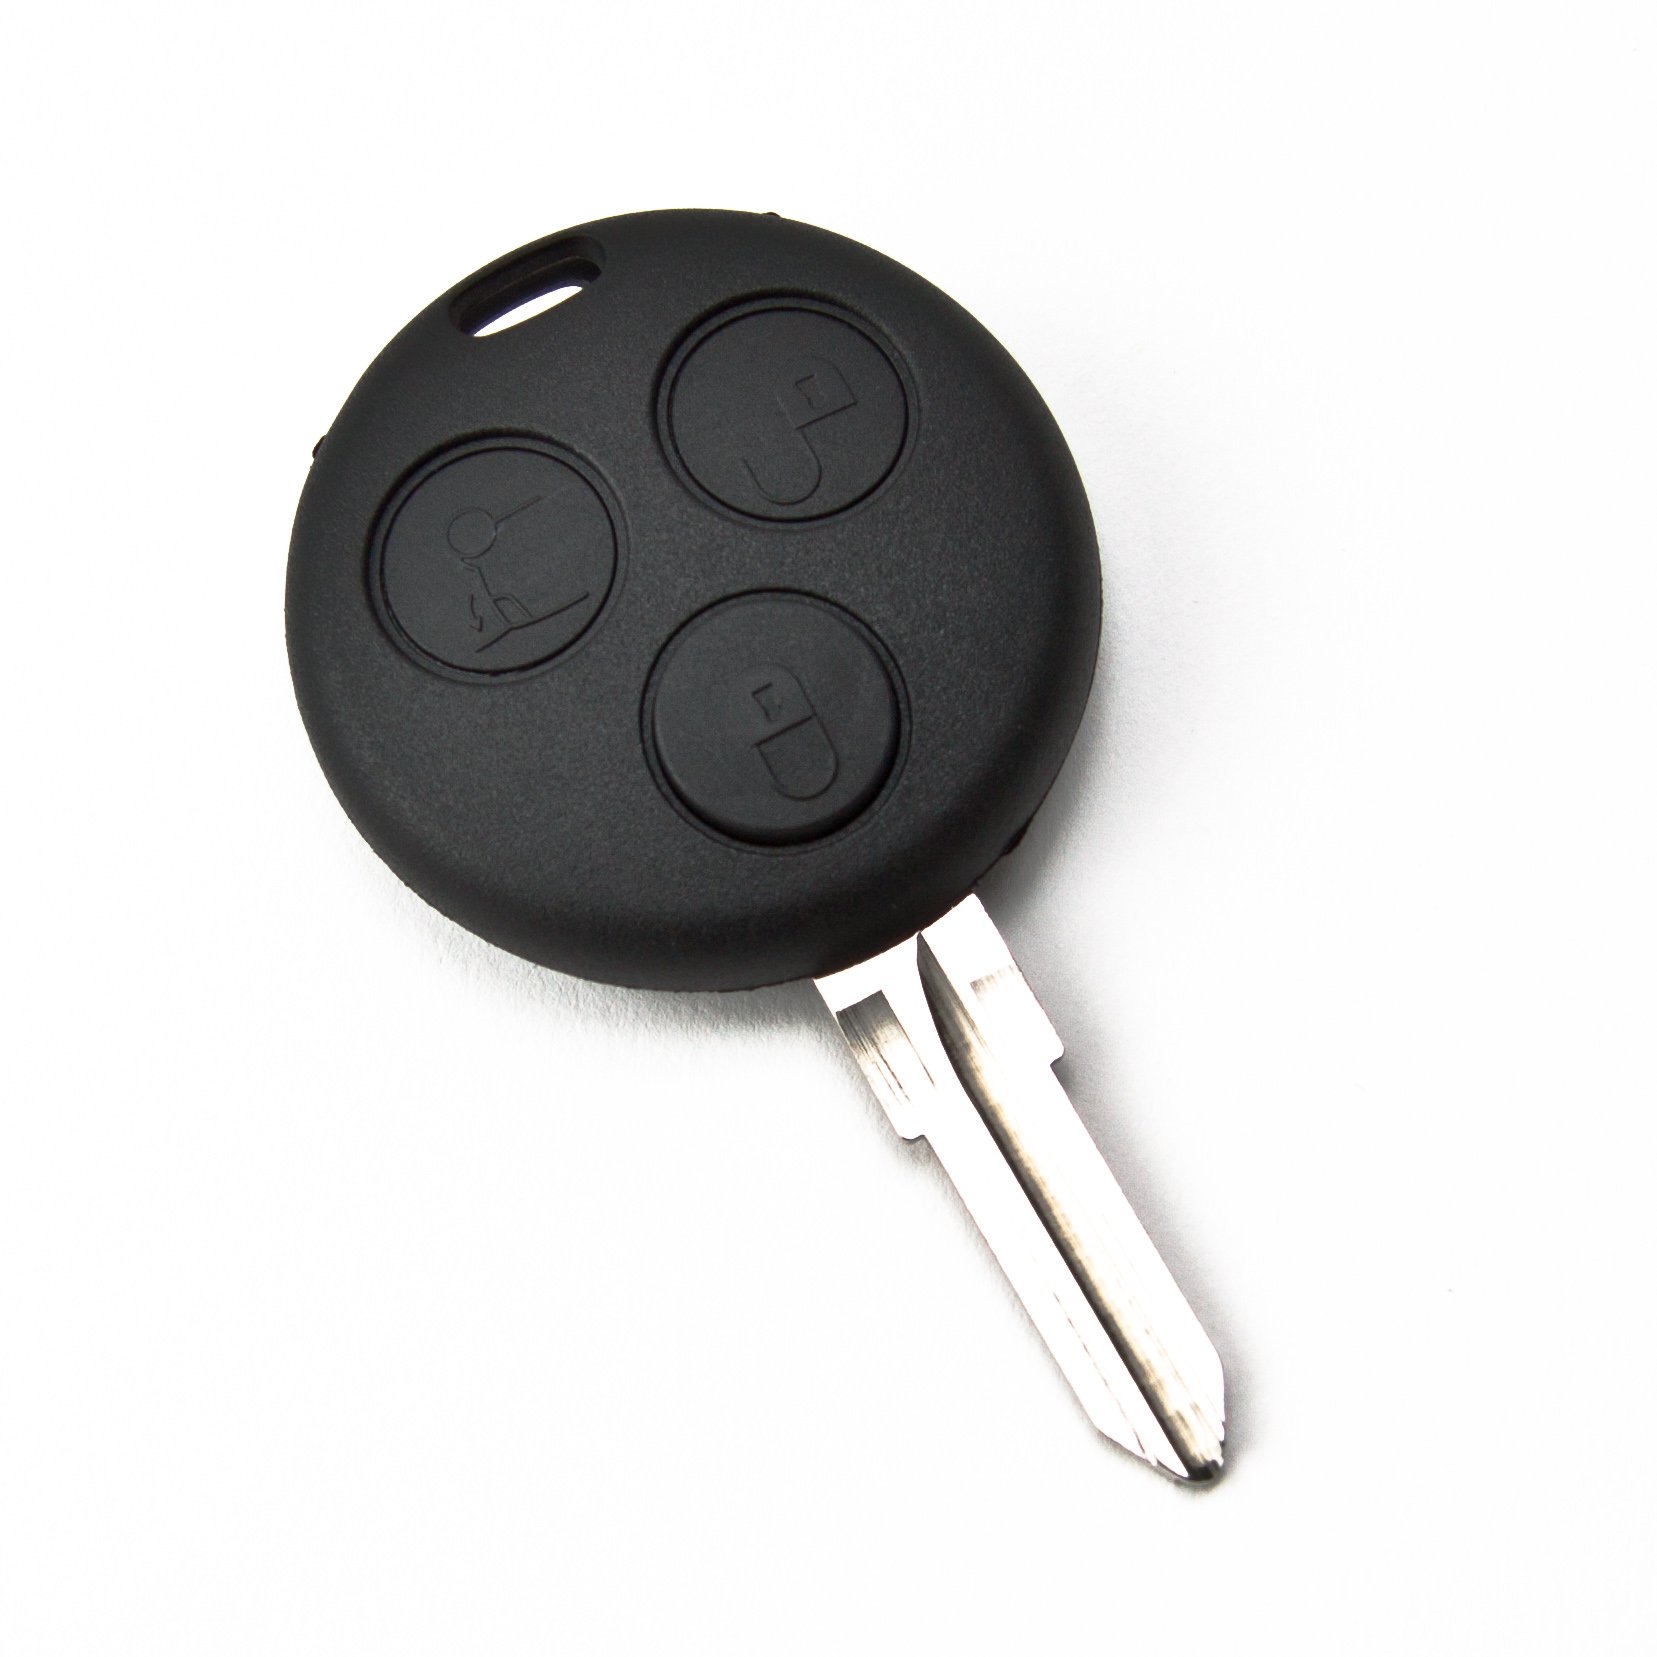 MBenzKS19B Ersatz Schlüsselgehäuse 3 Taste Autoschlüssel Schlüssel Fernbedienung Funkschlüssel Gehäuse ohne Elektronik von INION